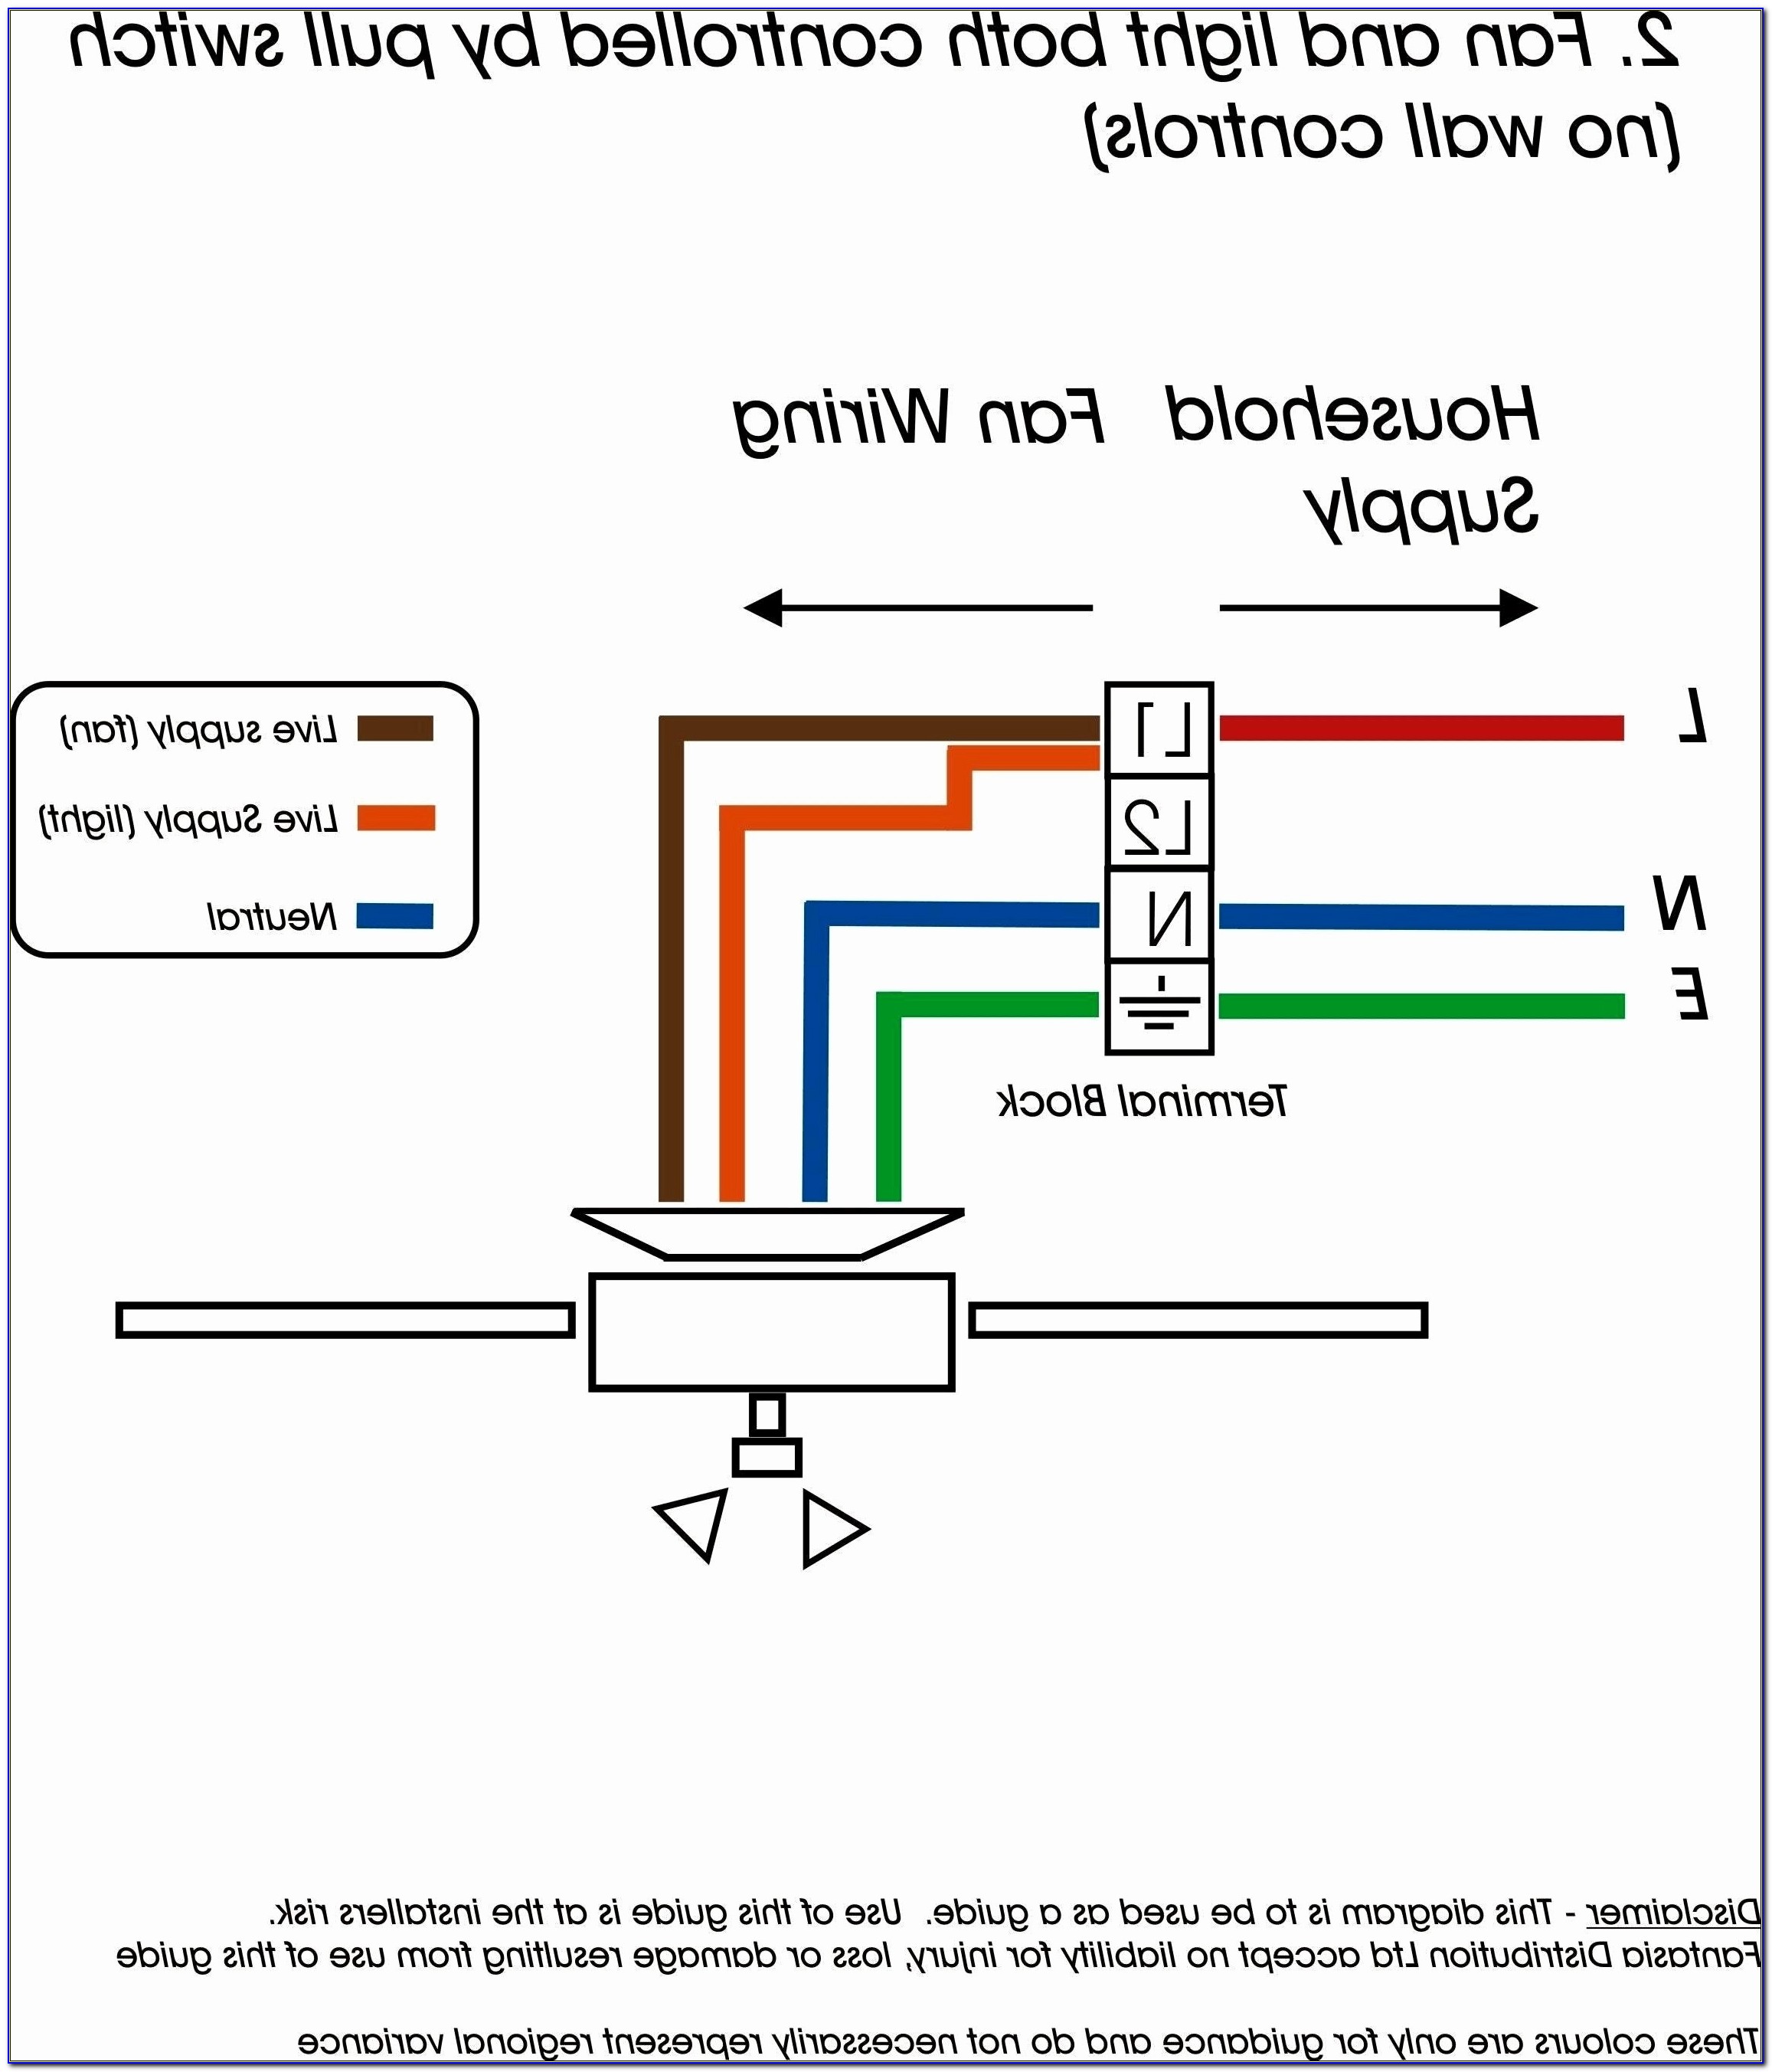 Rj11 Wiring Diagram Uk